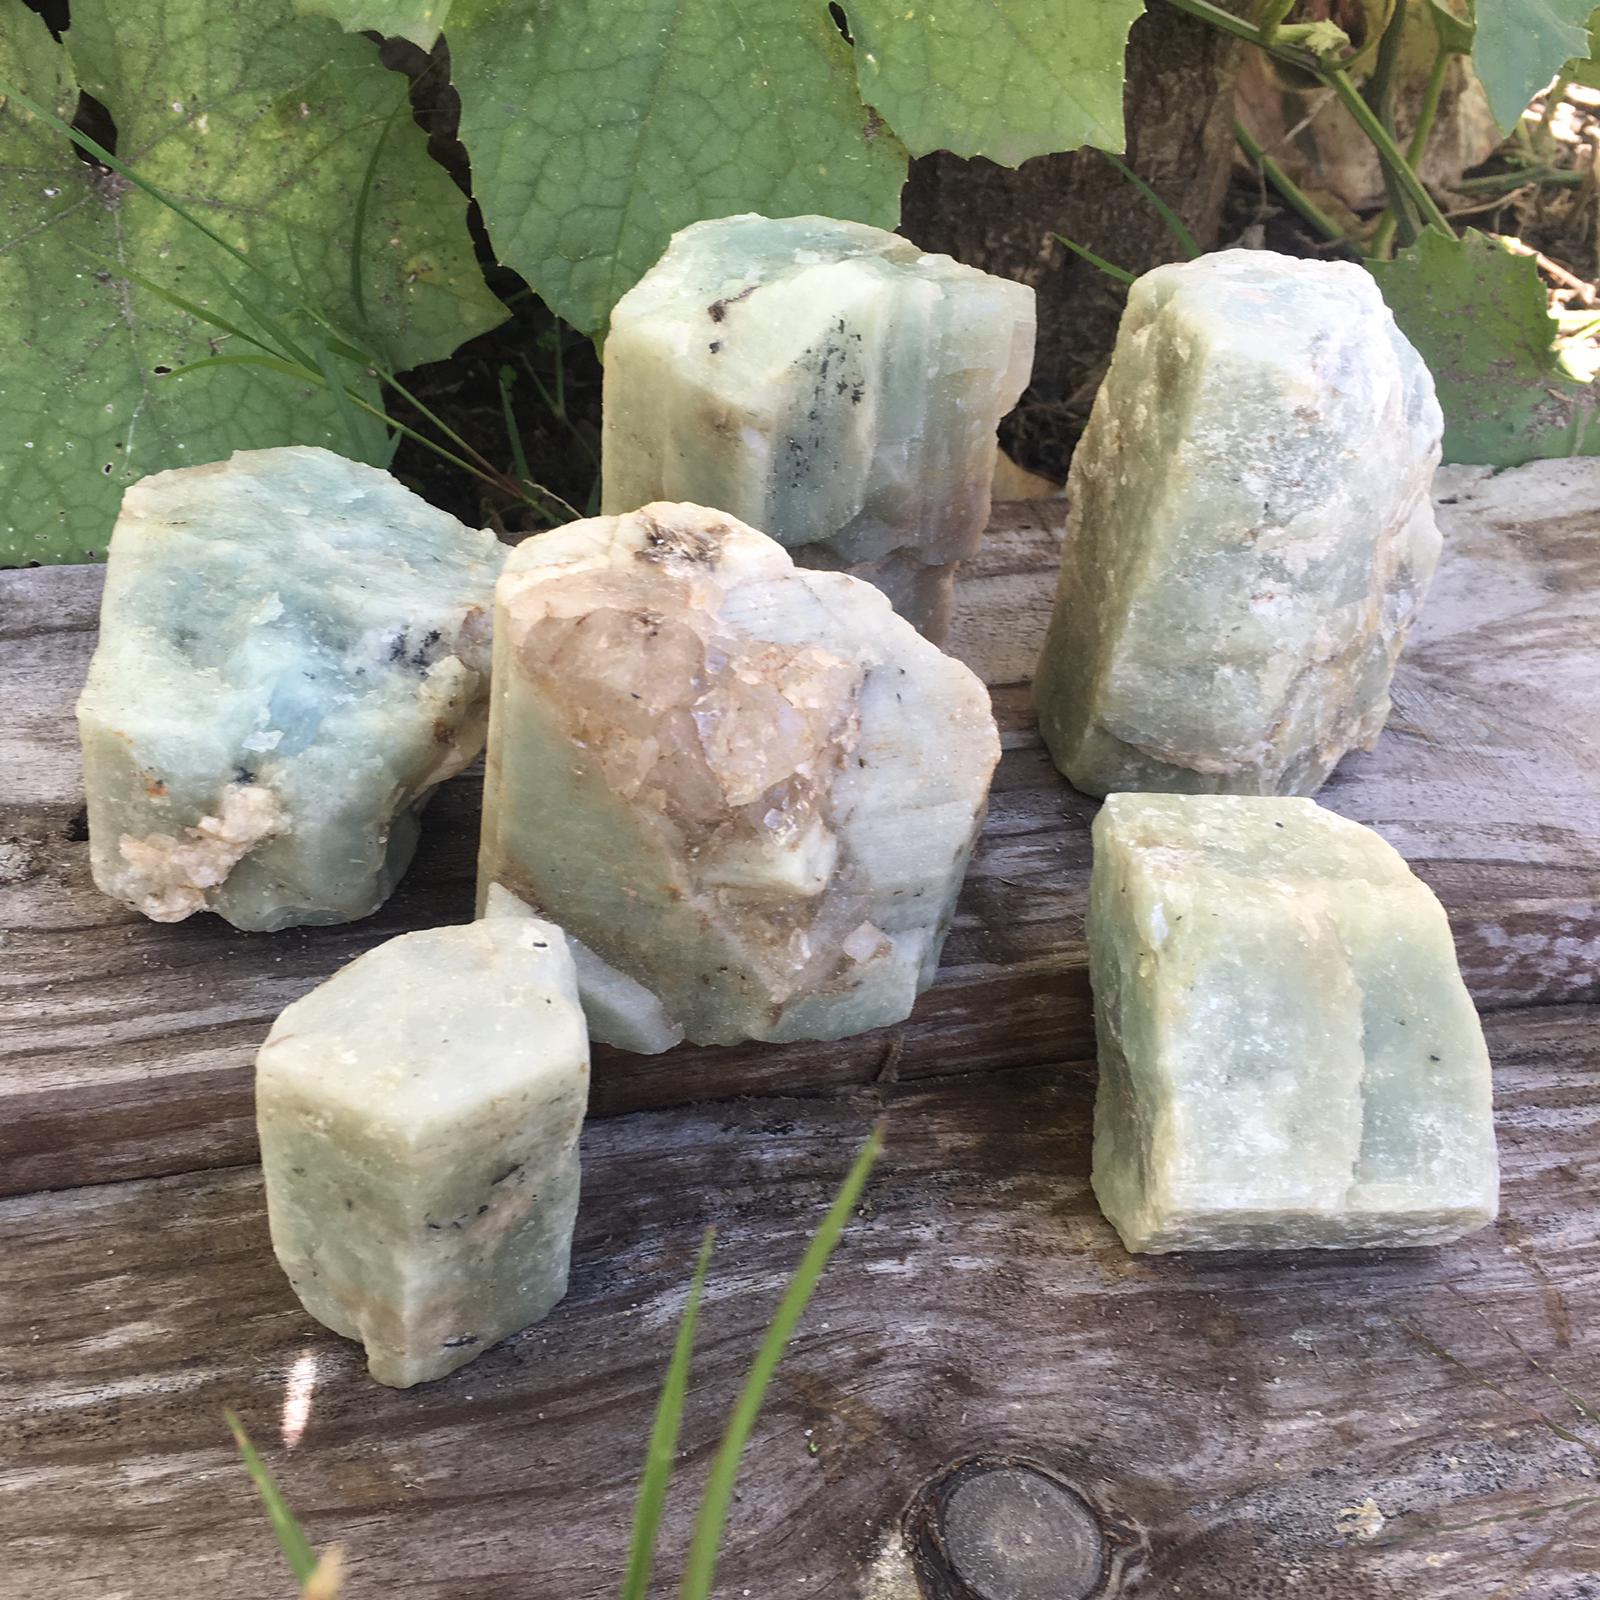 Stones from Uruguay - Rough Beryllium